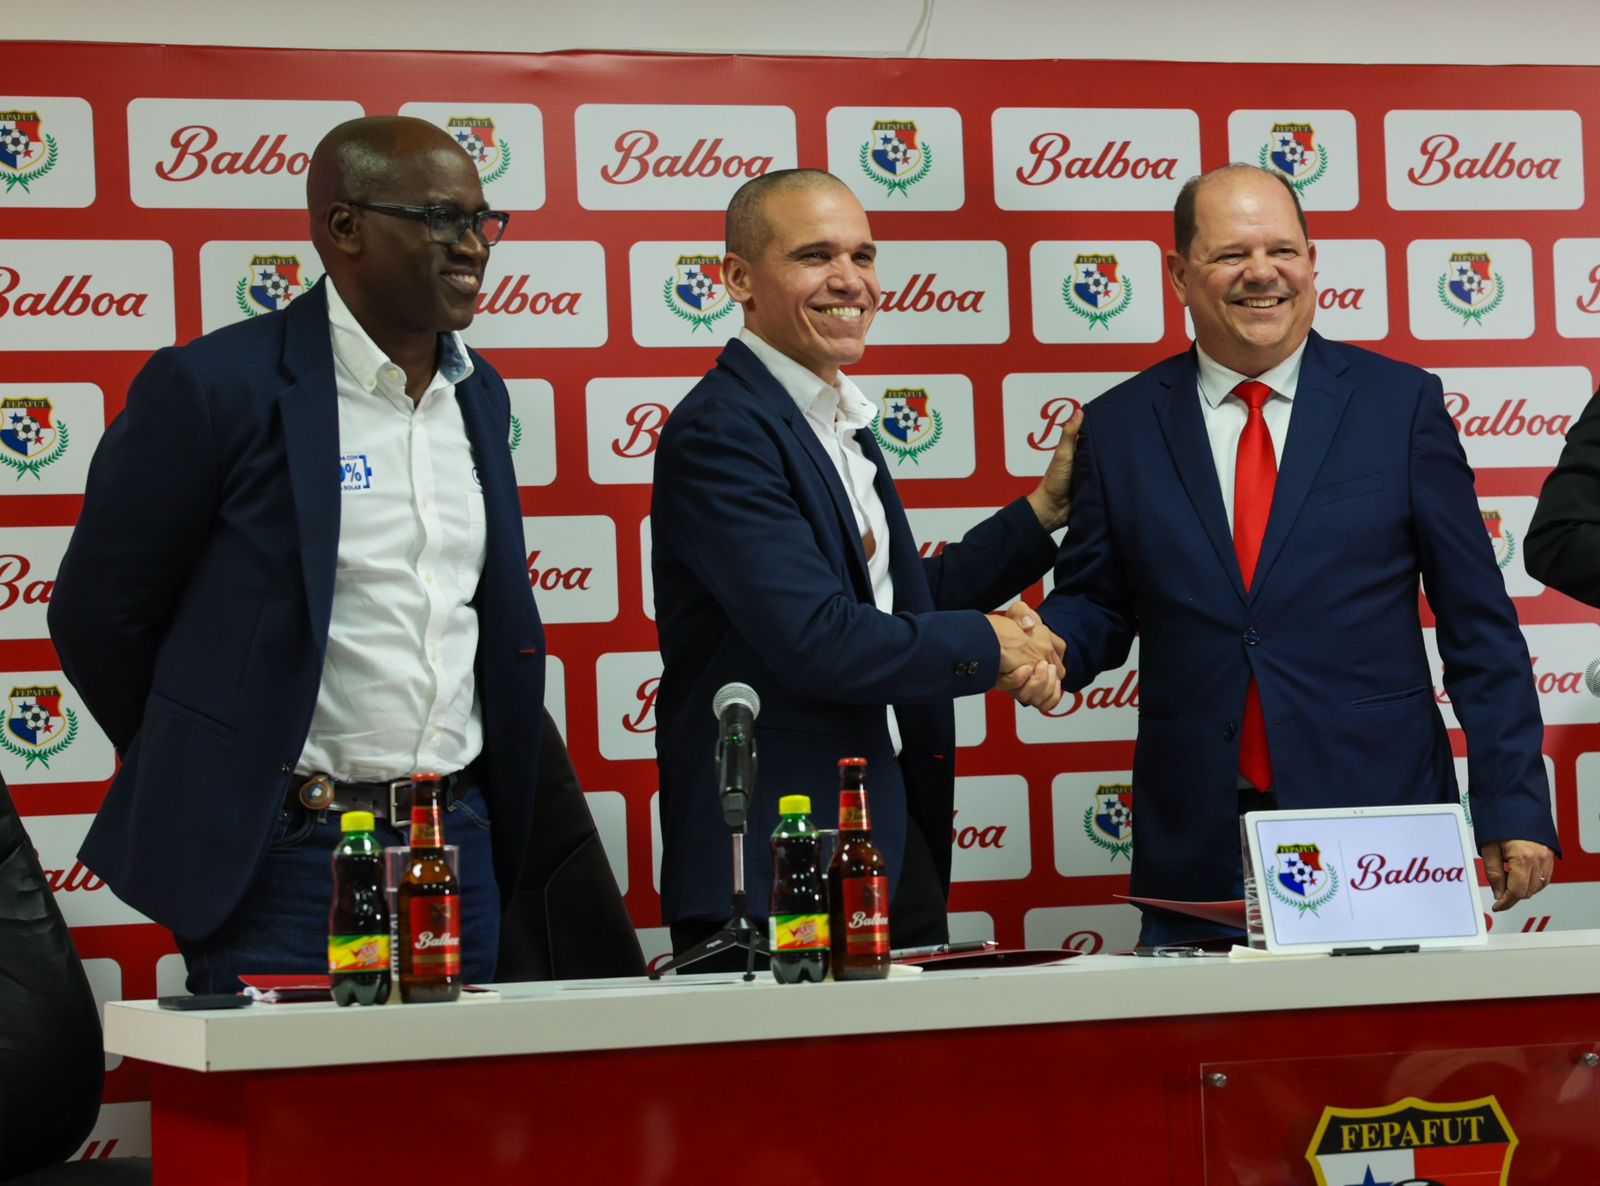 Cerveza Balboa reafirma su compromiso con el fútbol panameño como Patrocinador Oficial